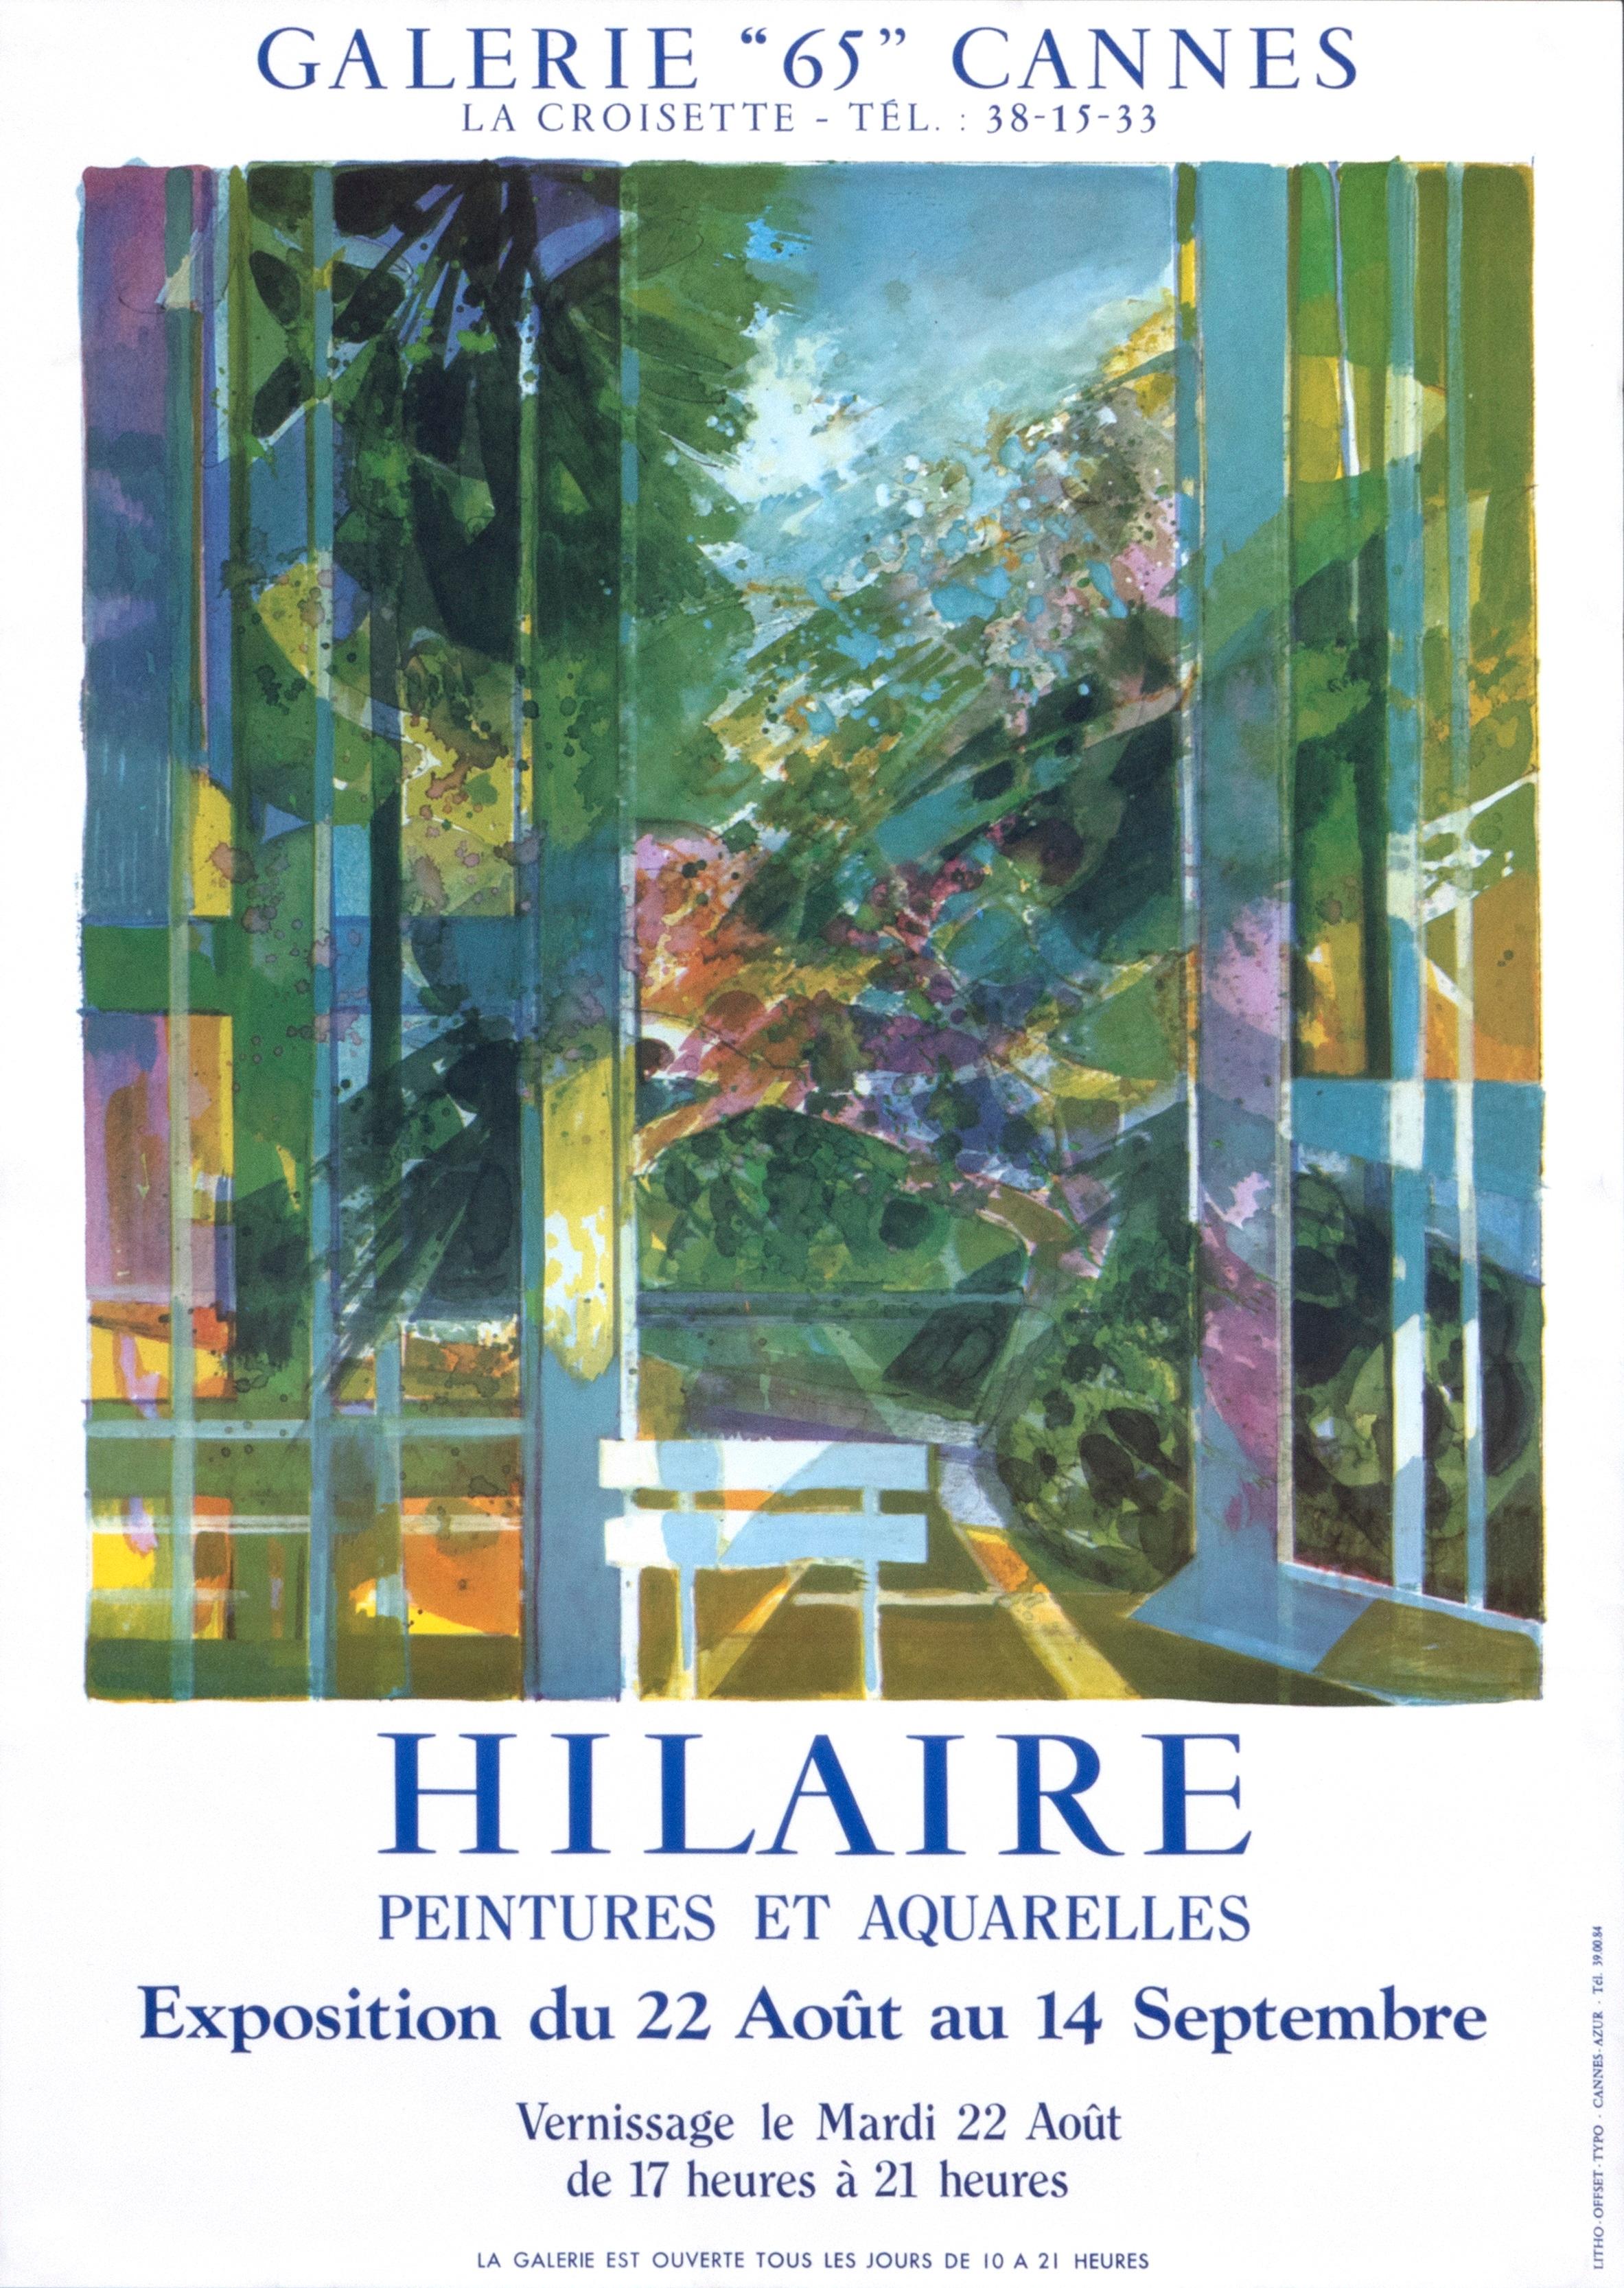 "Hilaire - Peintures et Aquarelles - Cannes" Landscape French Exhibition Poster - Print by Camille Hilaire